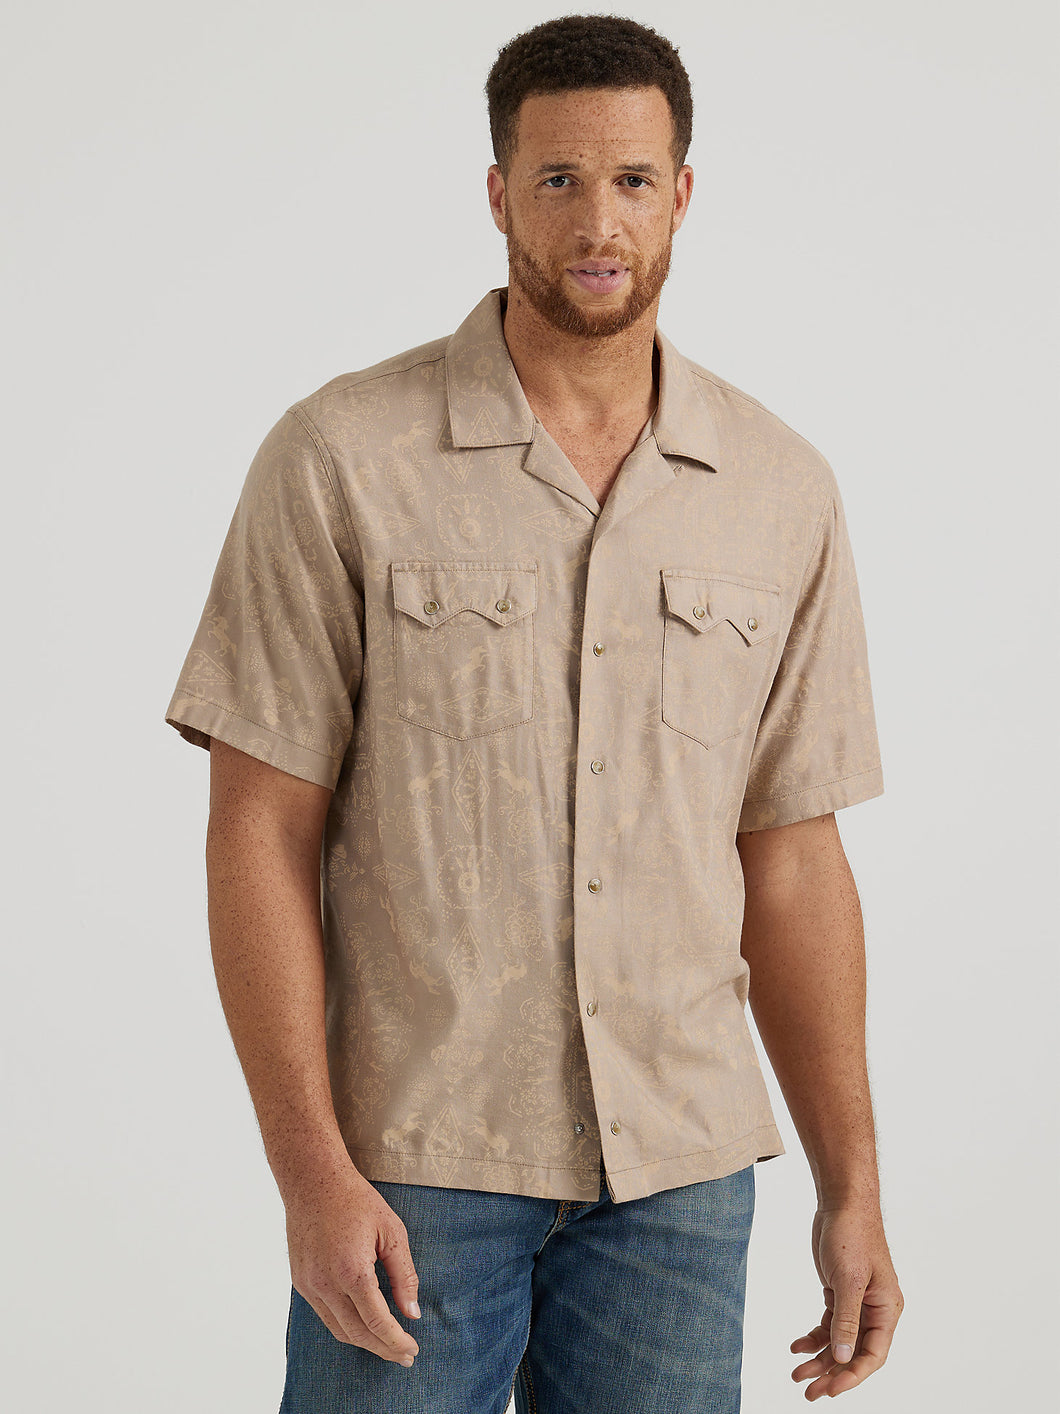 Men's Wrangler Classic Fit Short Sleeve Shirt 44426